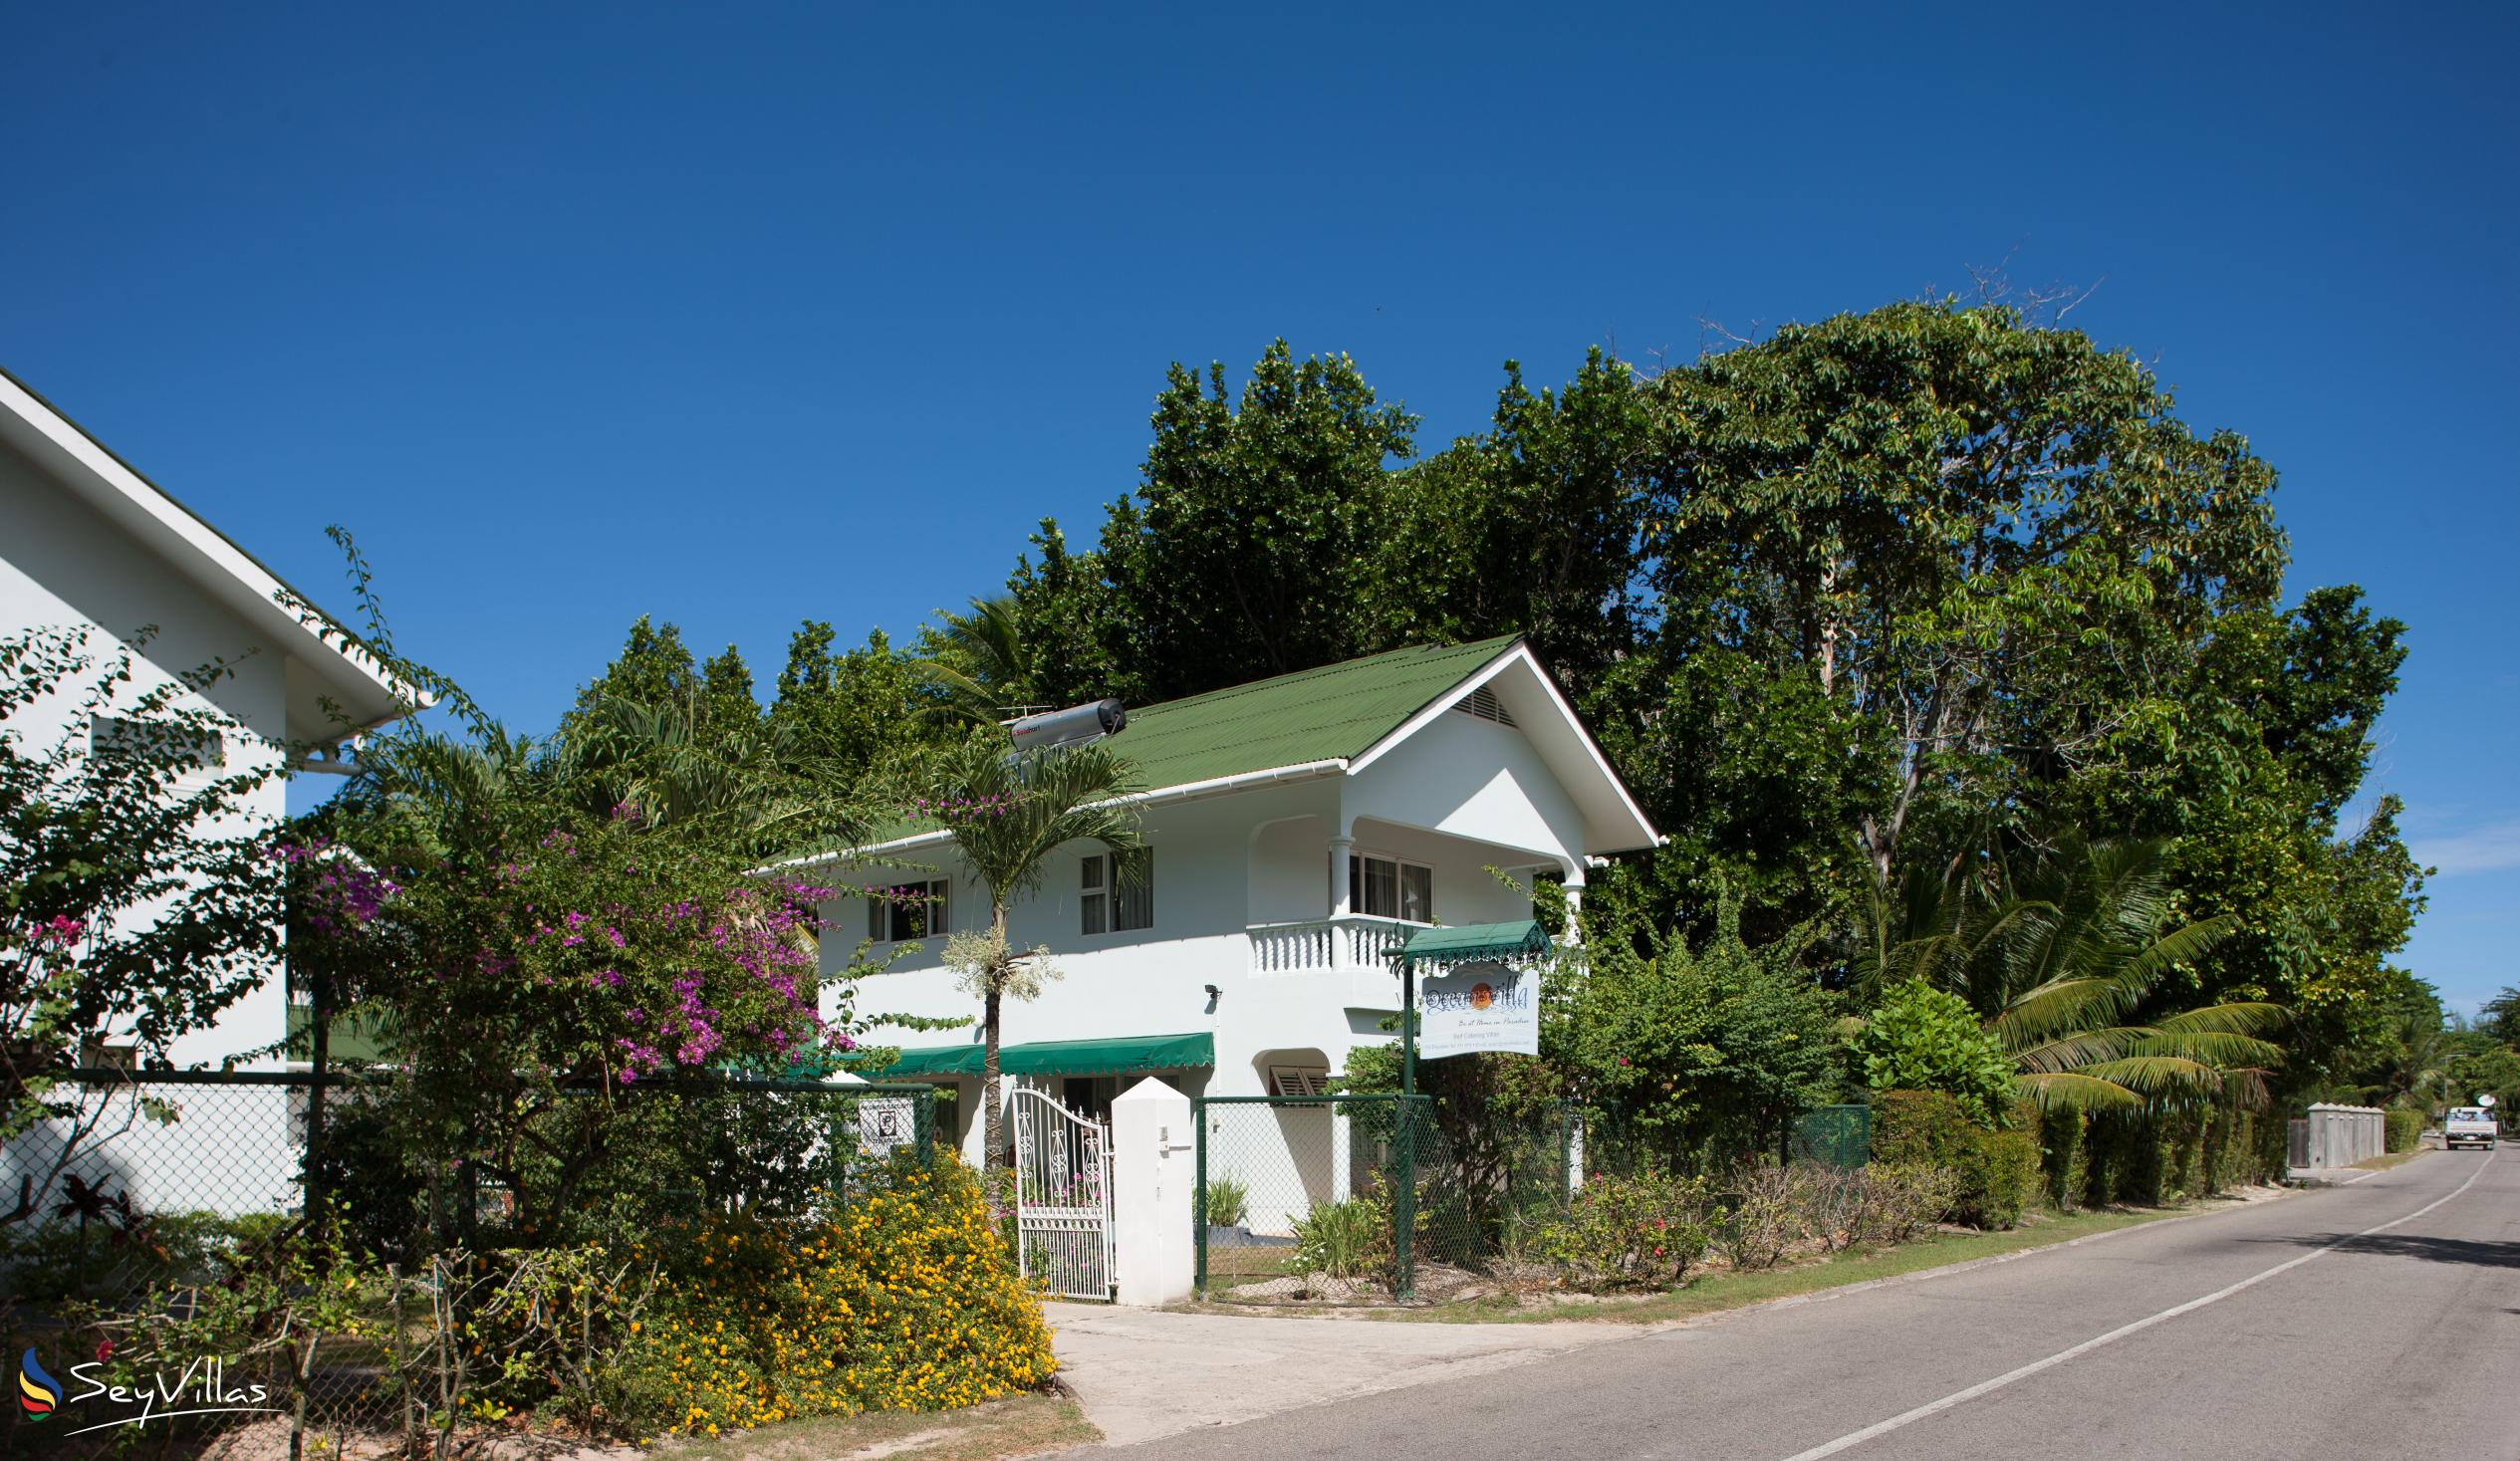 Foto 4: Ocean Villa - Aussenbereich - Praslin (Seychellen)